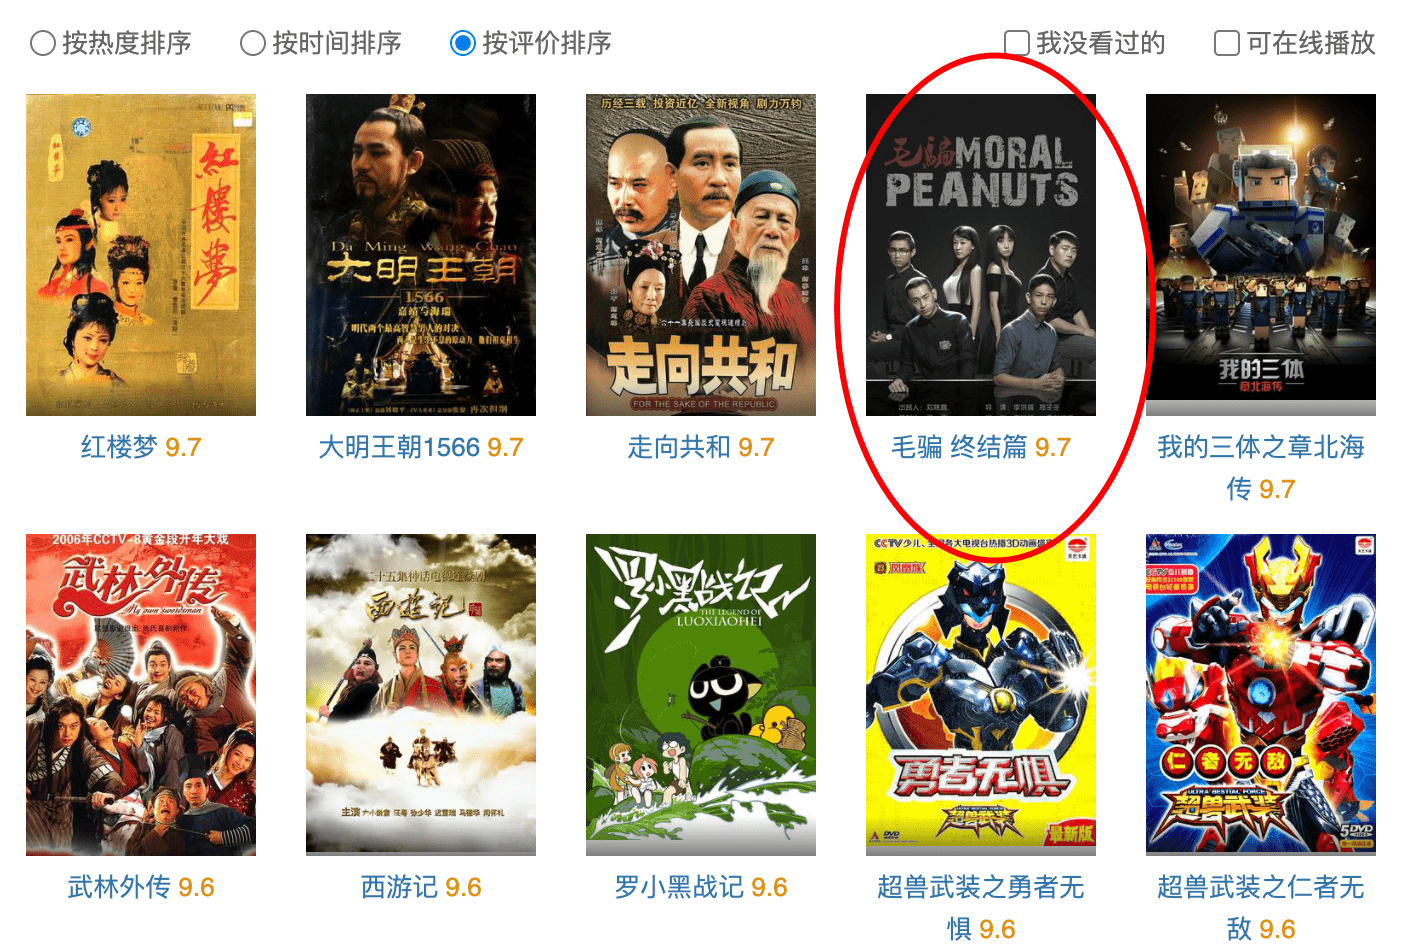 豆瓣书评分排行榜_2016年豆瓣评分最高的华语电影排行榜!每一部都堪称经典